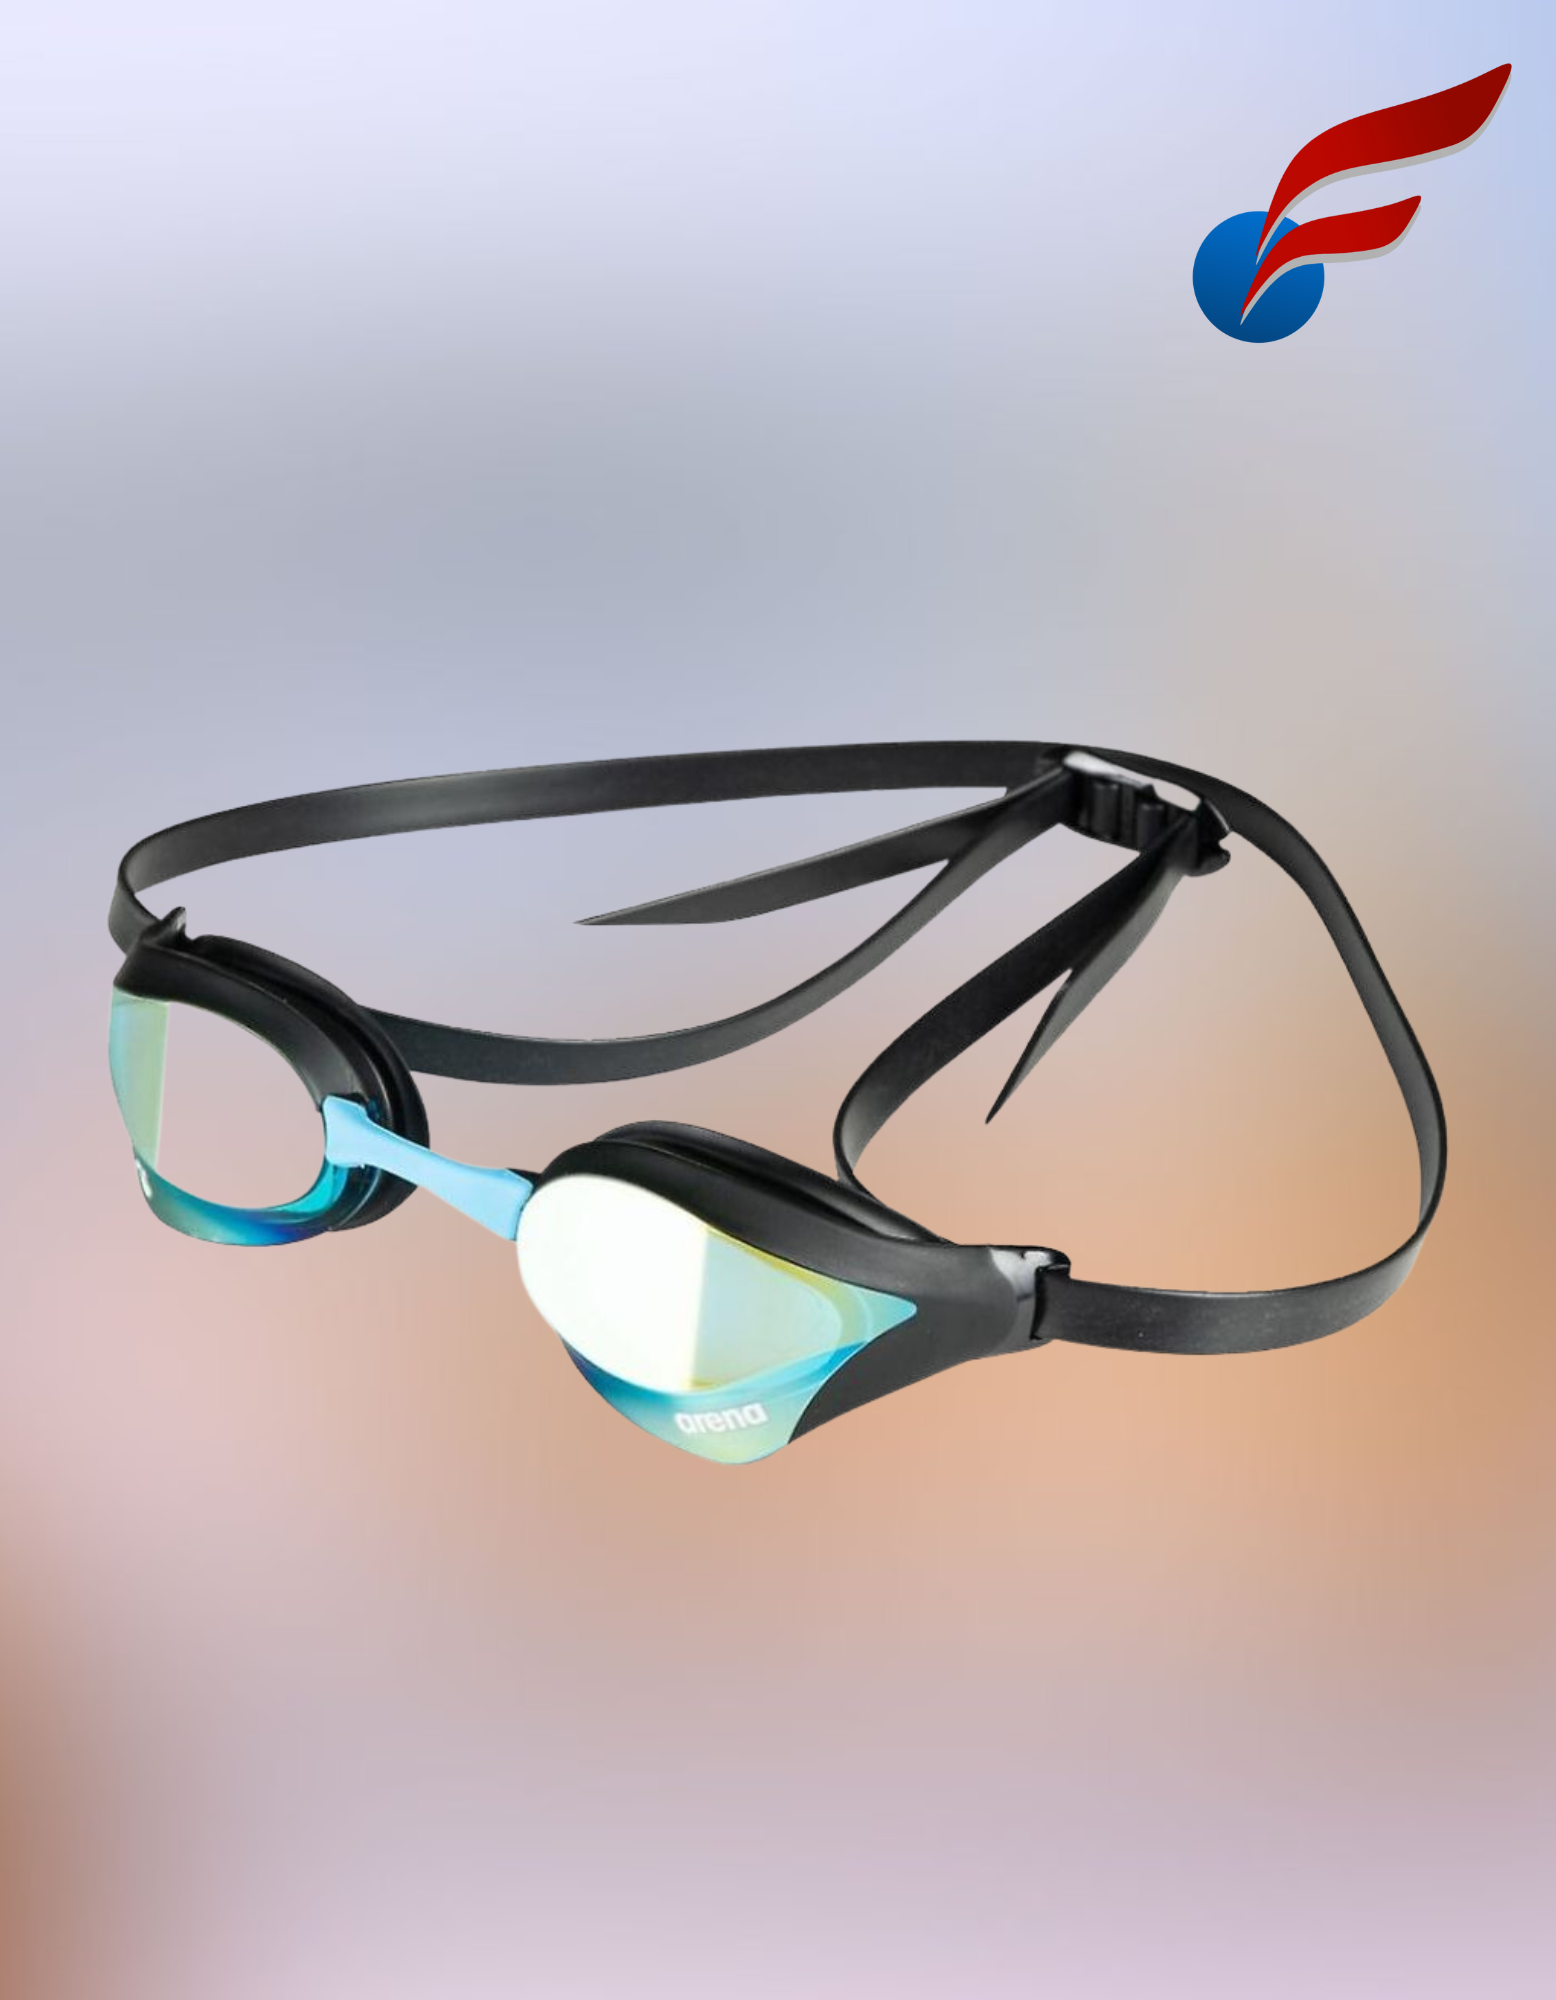 Óculos de natação Arena Cobra Core Swipe com lentes espelhadas